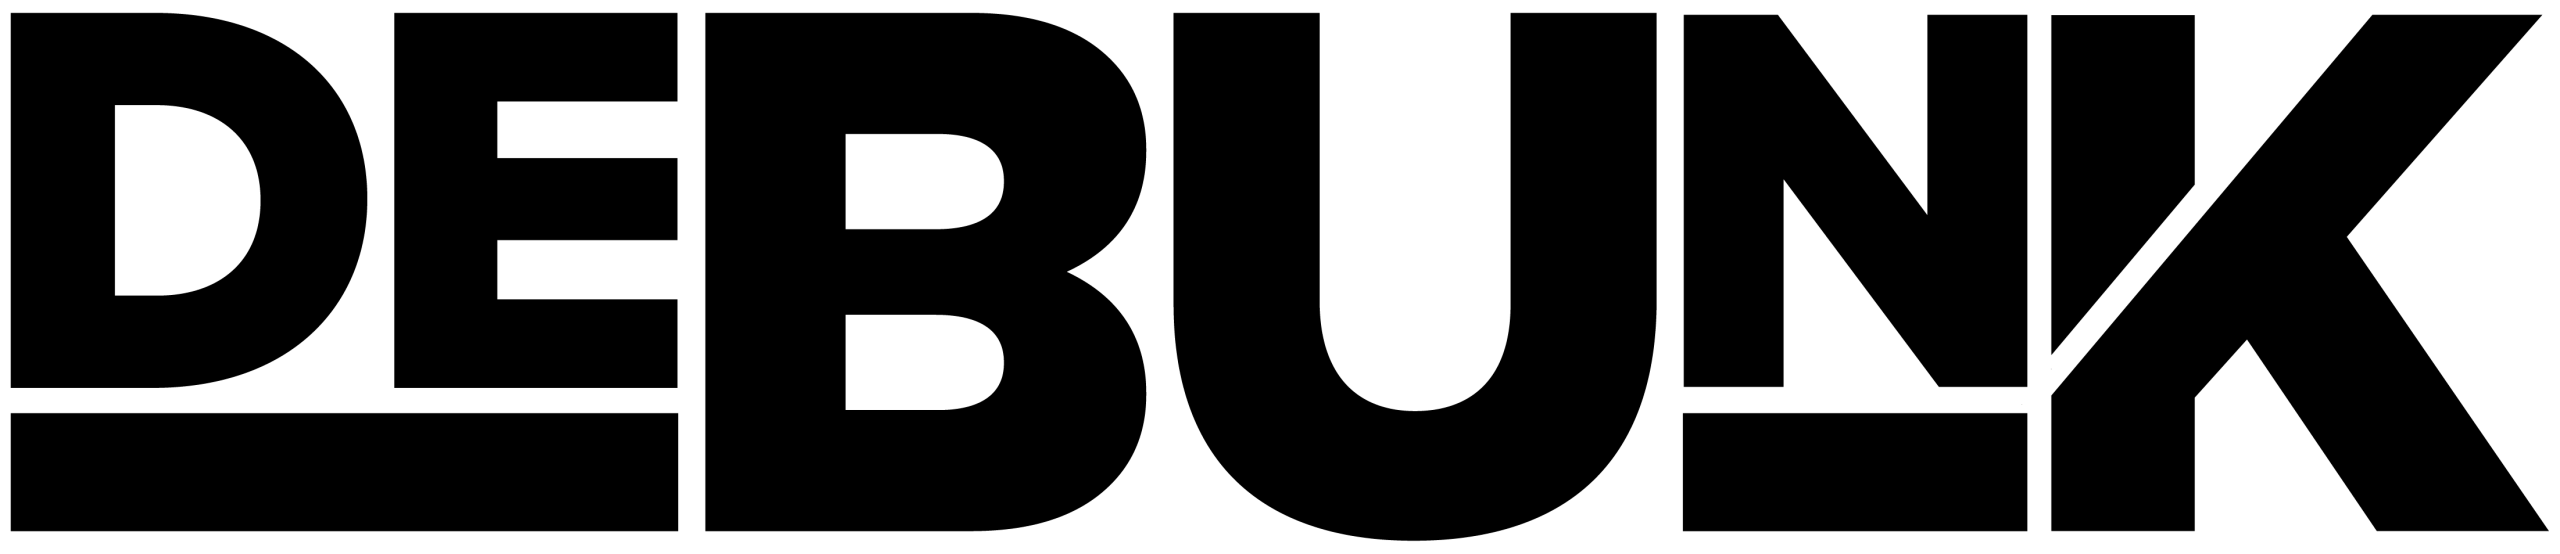 logo-black-scaled.webp